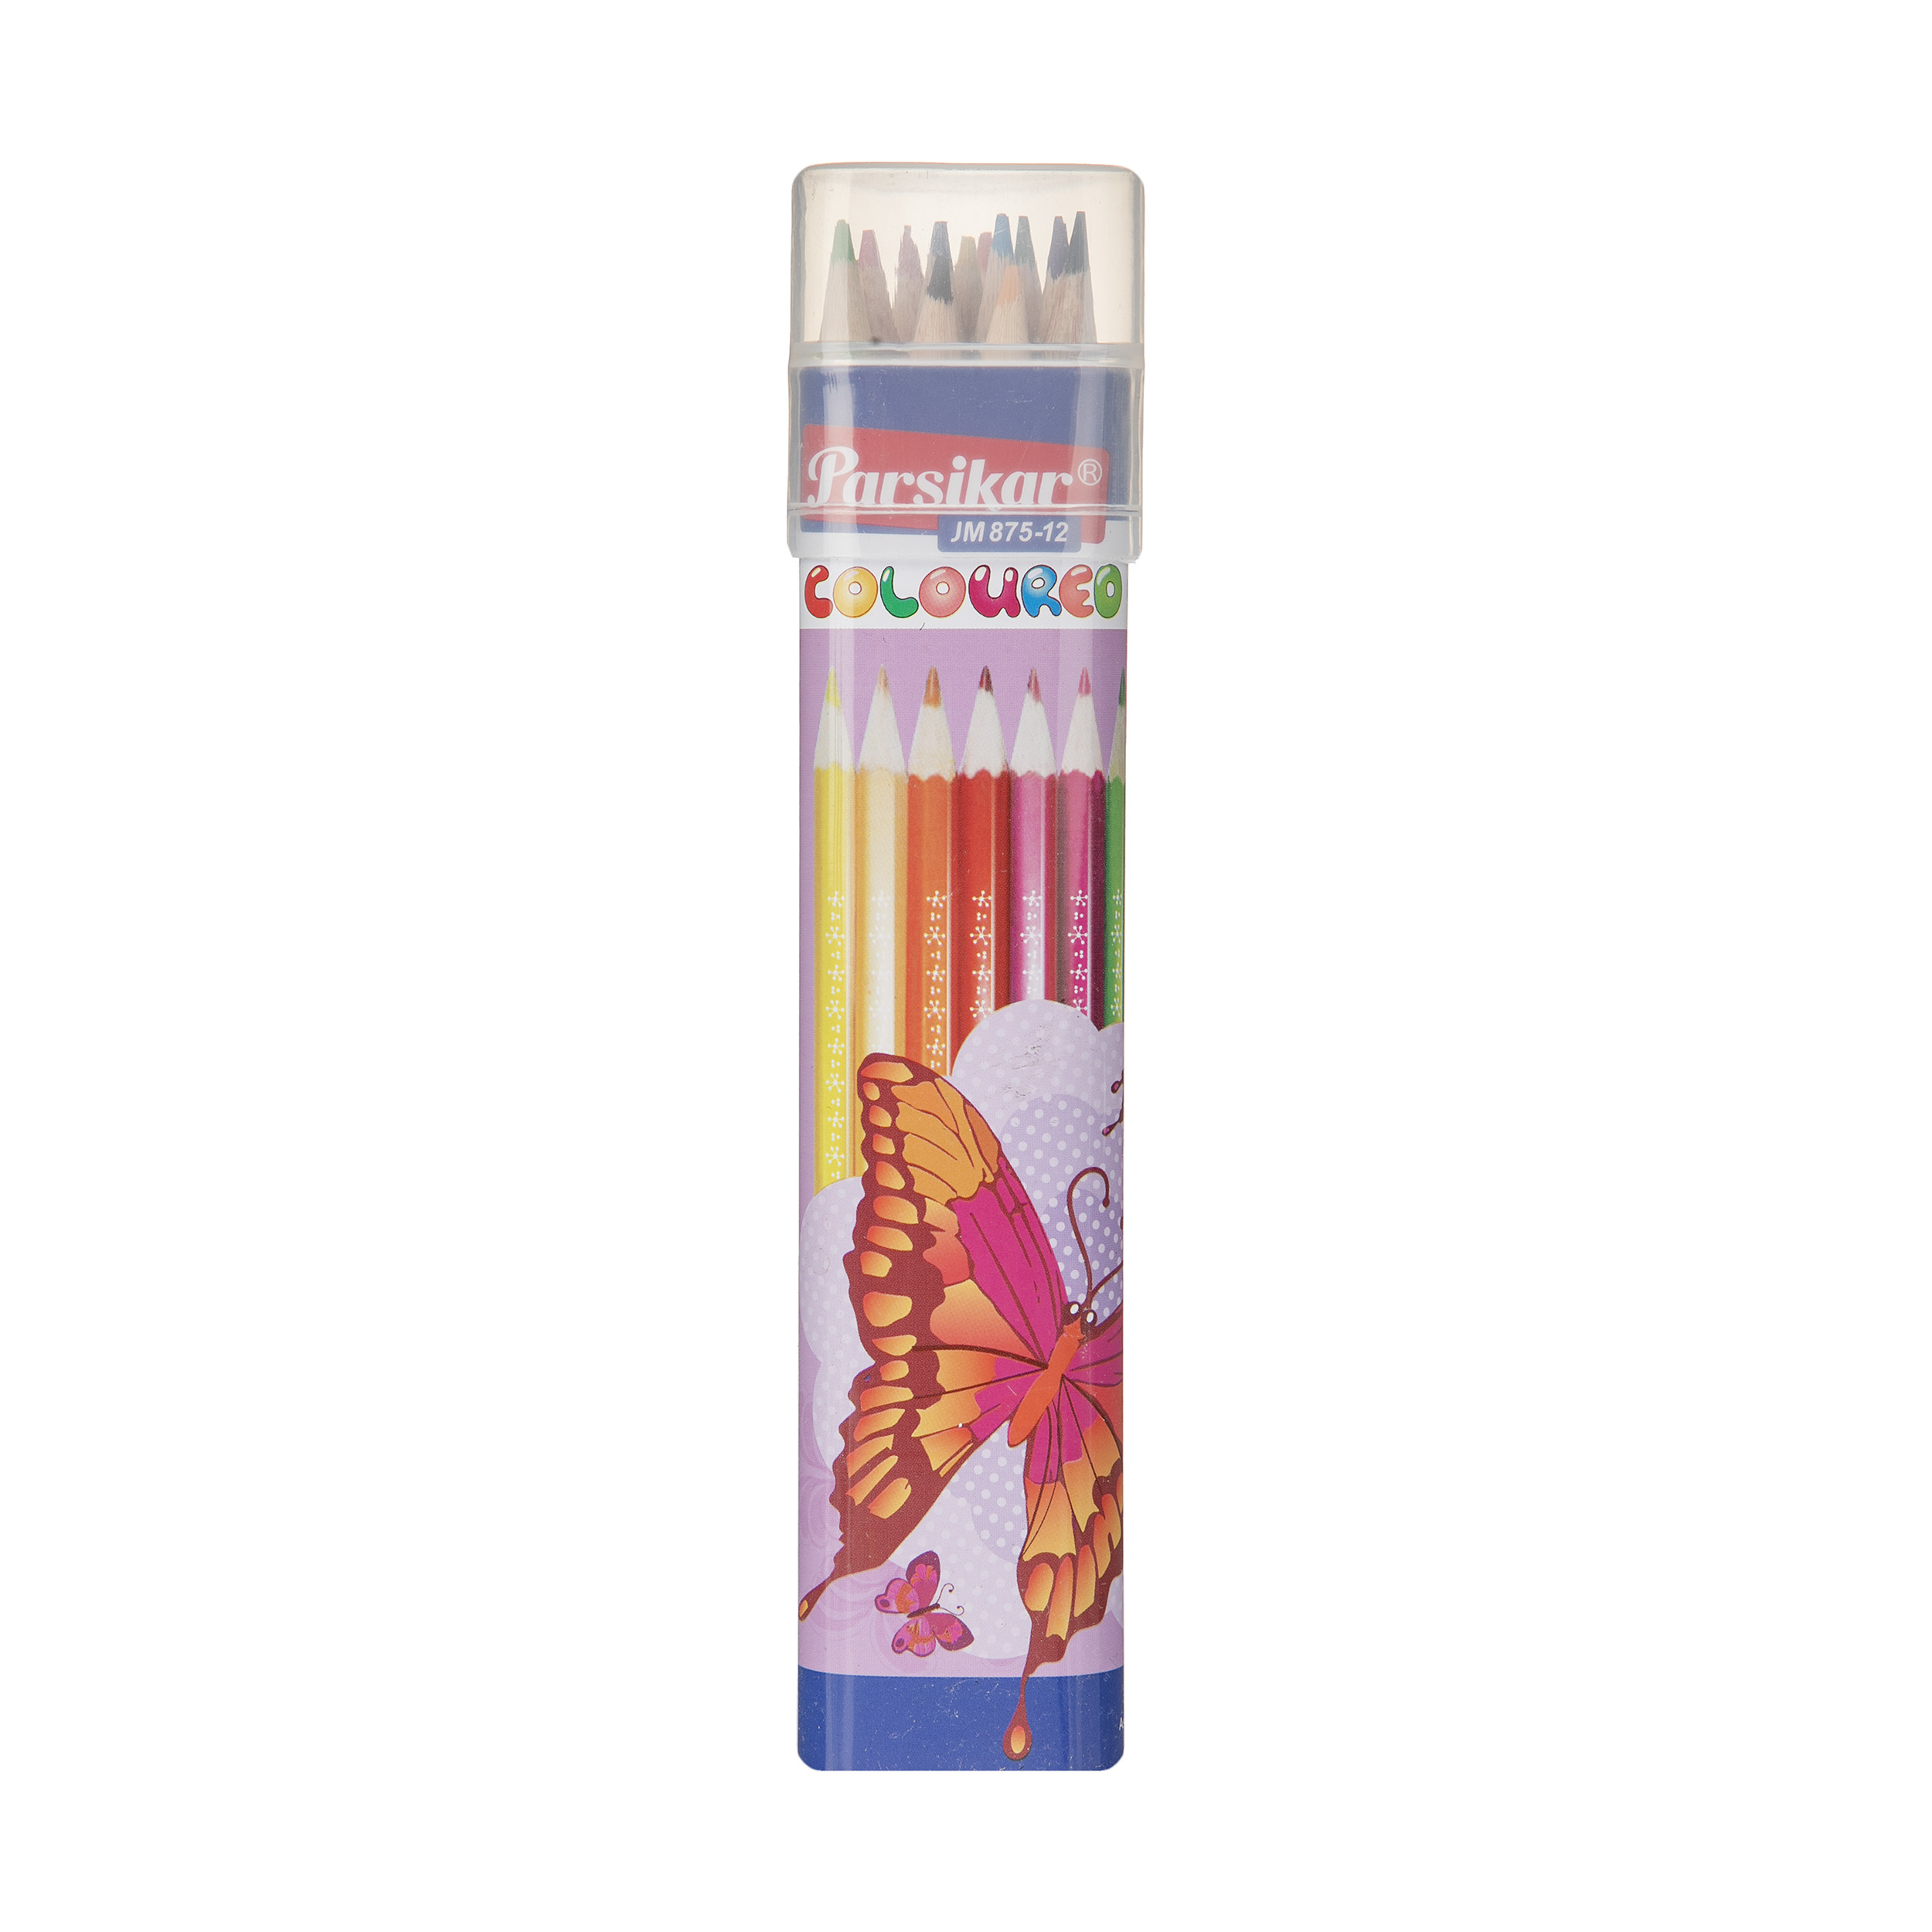 مداد رنگی 12 رنگ پارسیکار مدل JM875-12-1